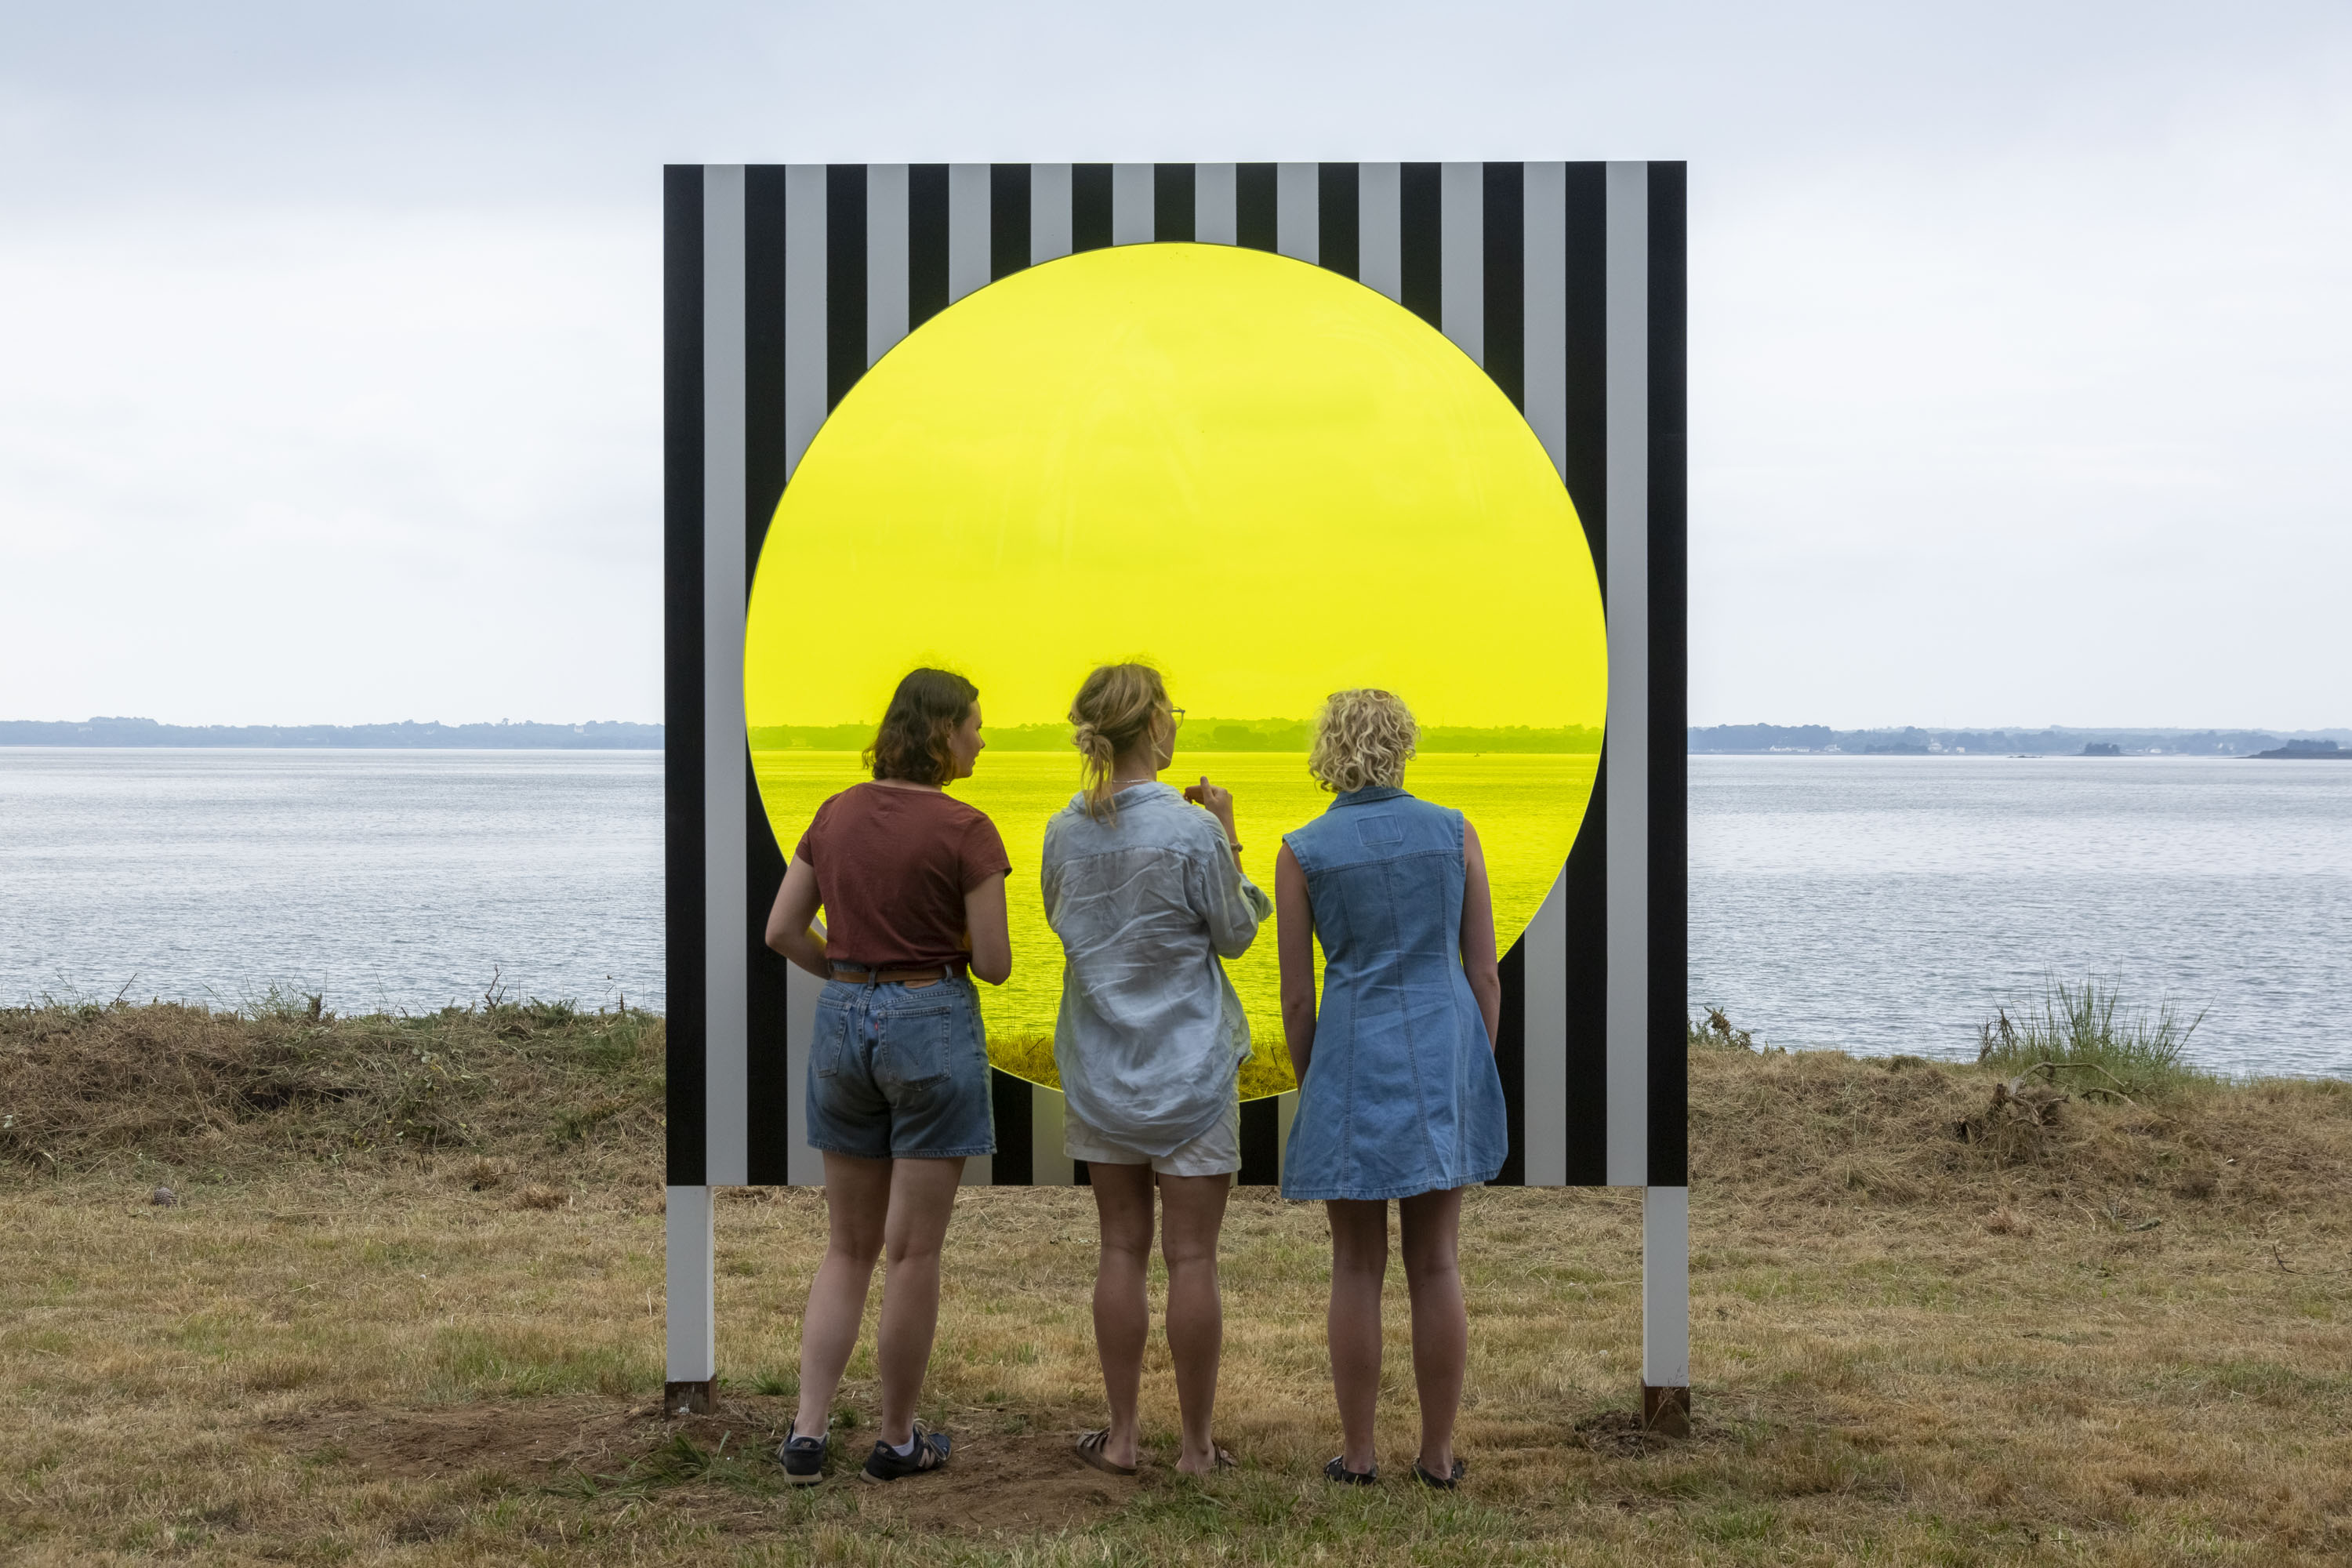 Trois personnes devant une installation présentant un disque jaune transparent devant un paysage de mer.